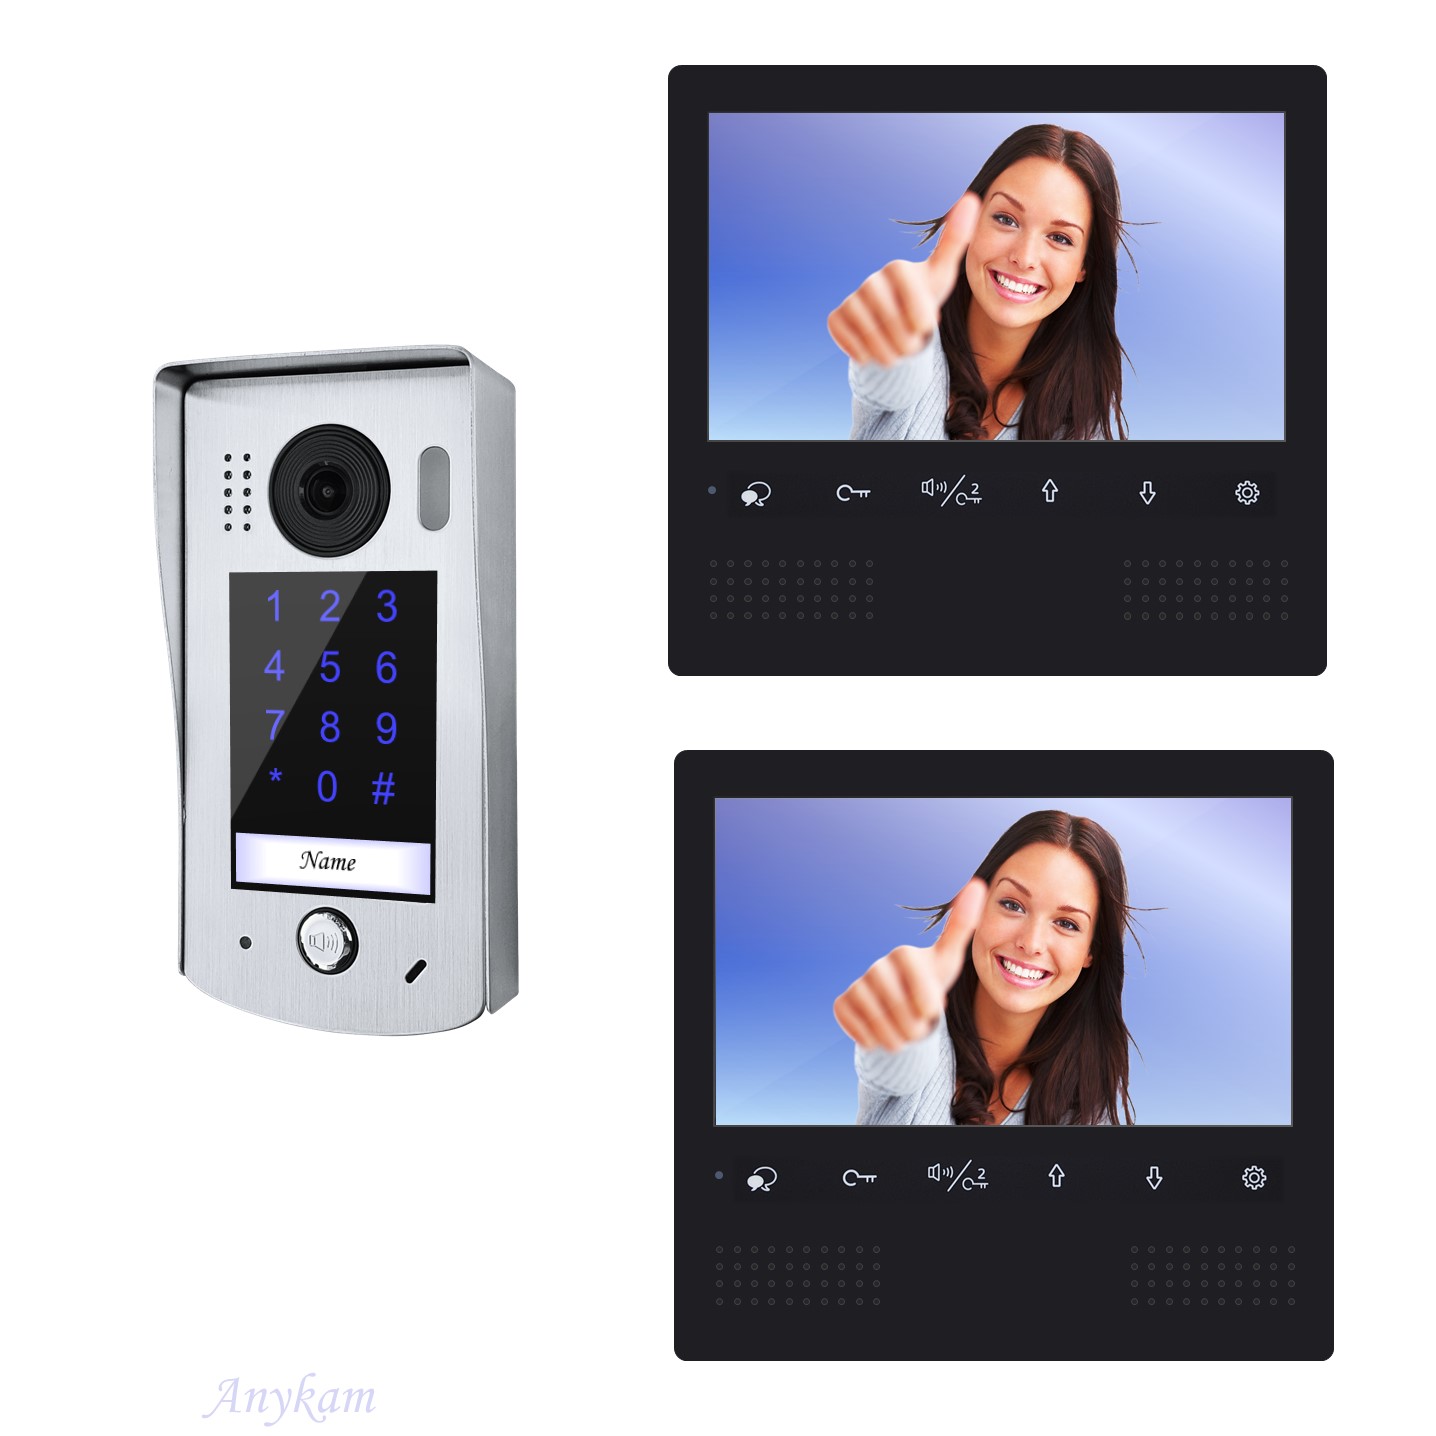 Anykam Design Farb Video Türsprechanlage, Videosprechanlage, Video Gegensprechanlage, Klingelanalge mit Kamera, Interfon mit 2-Draht Technik